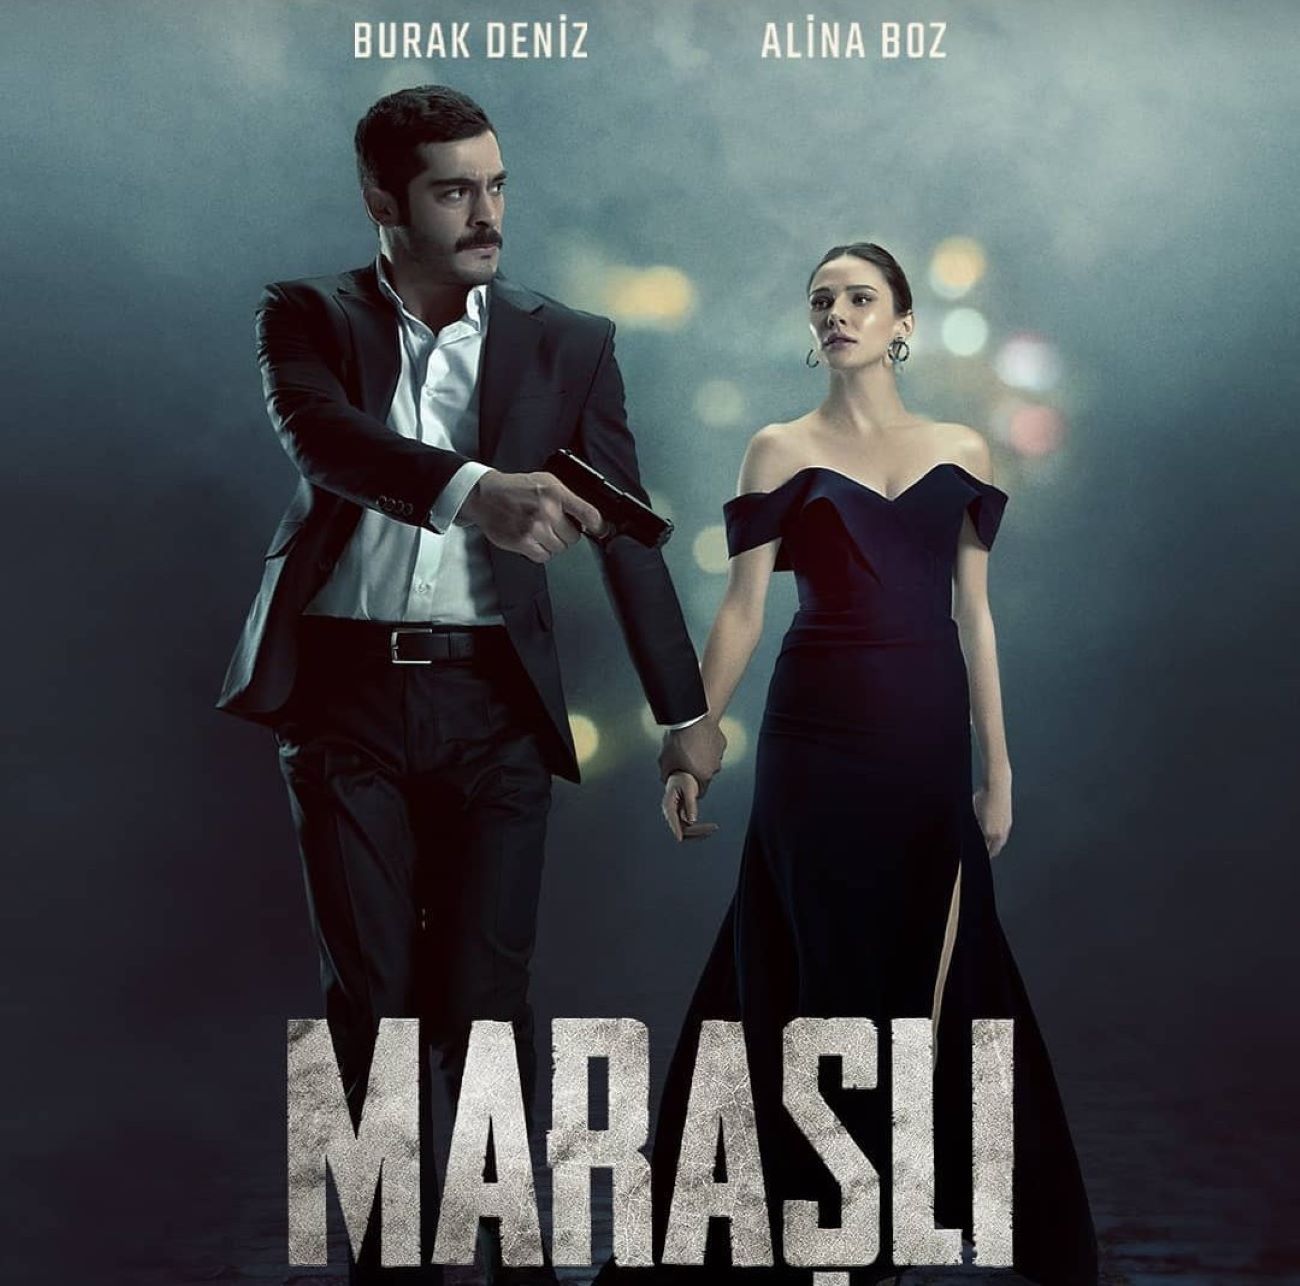 Marasli Series turca descargar